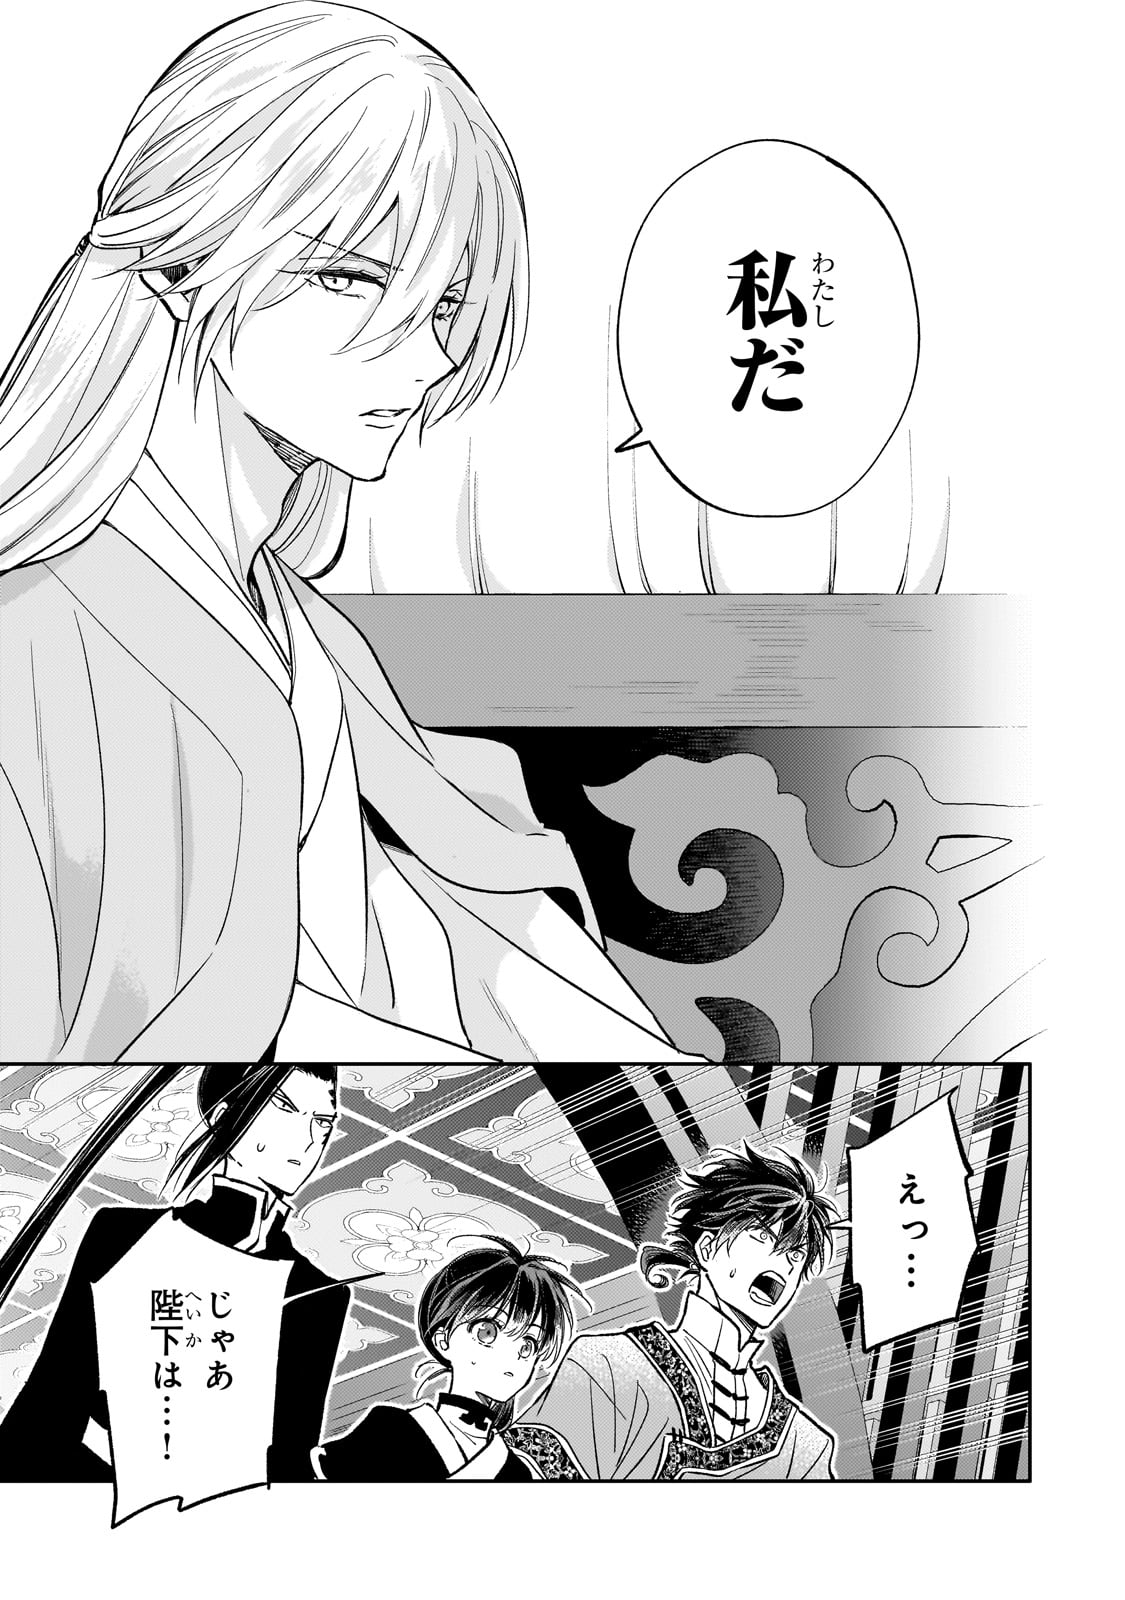 Koukyu no Zatsuyouki - Chapter 26 - Page 3